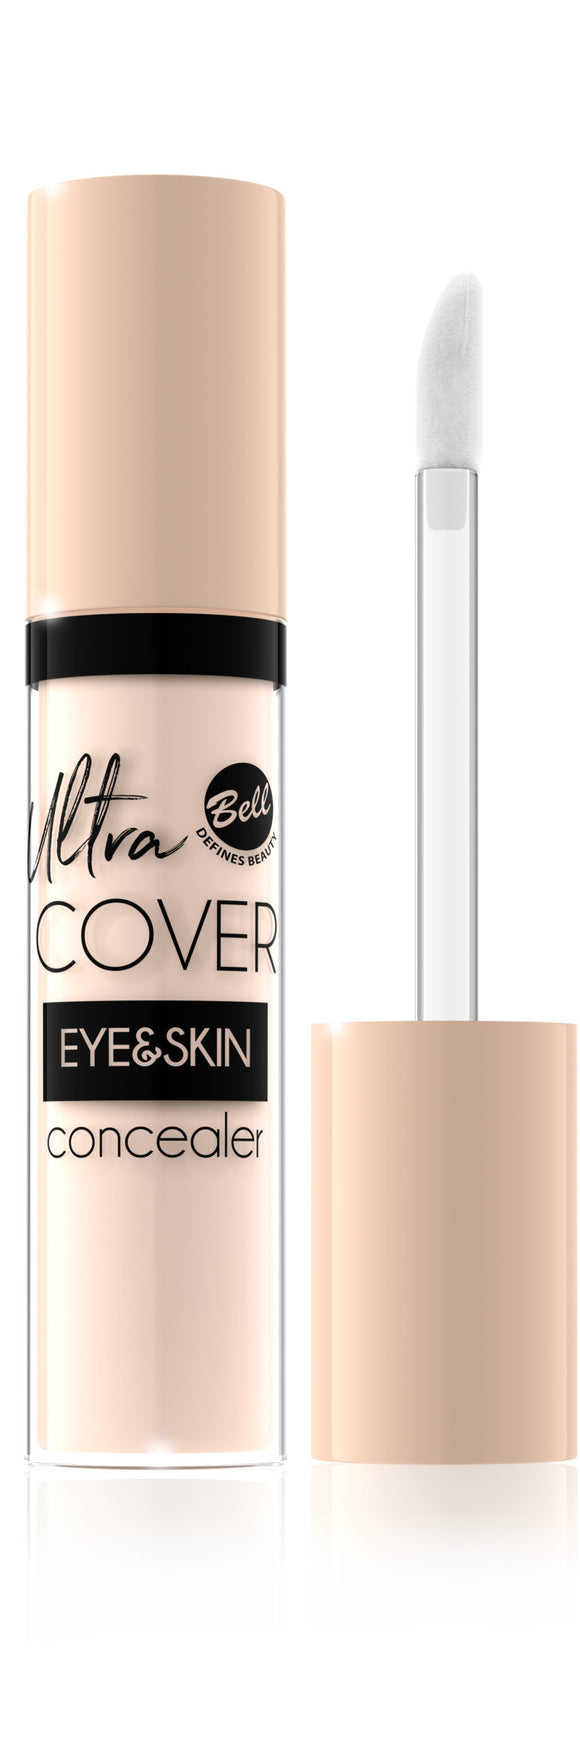 Bell Ultra Cover Eye & Skin Intense Covering Liquid Concealer 01 Light Ivory 5g